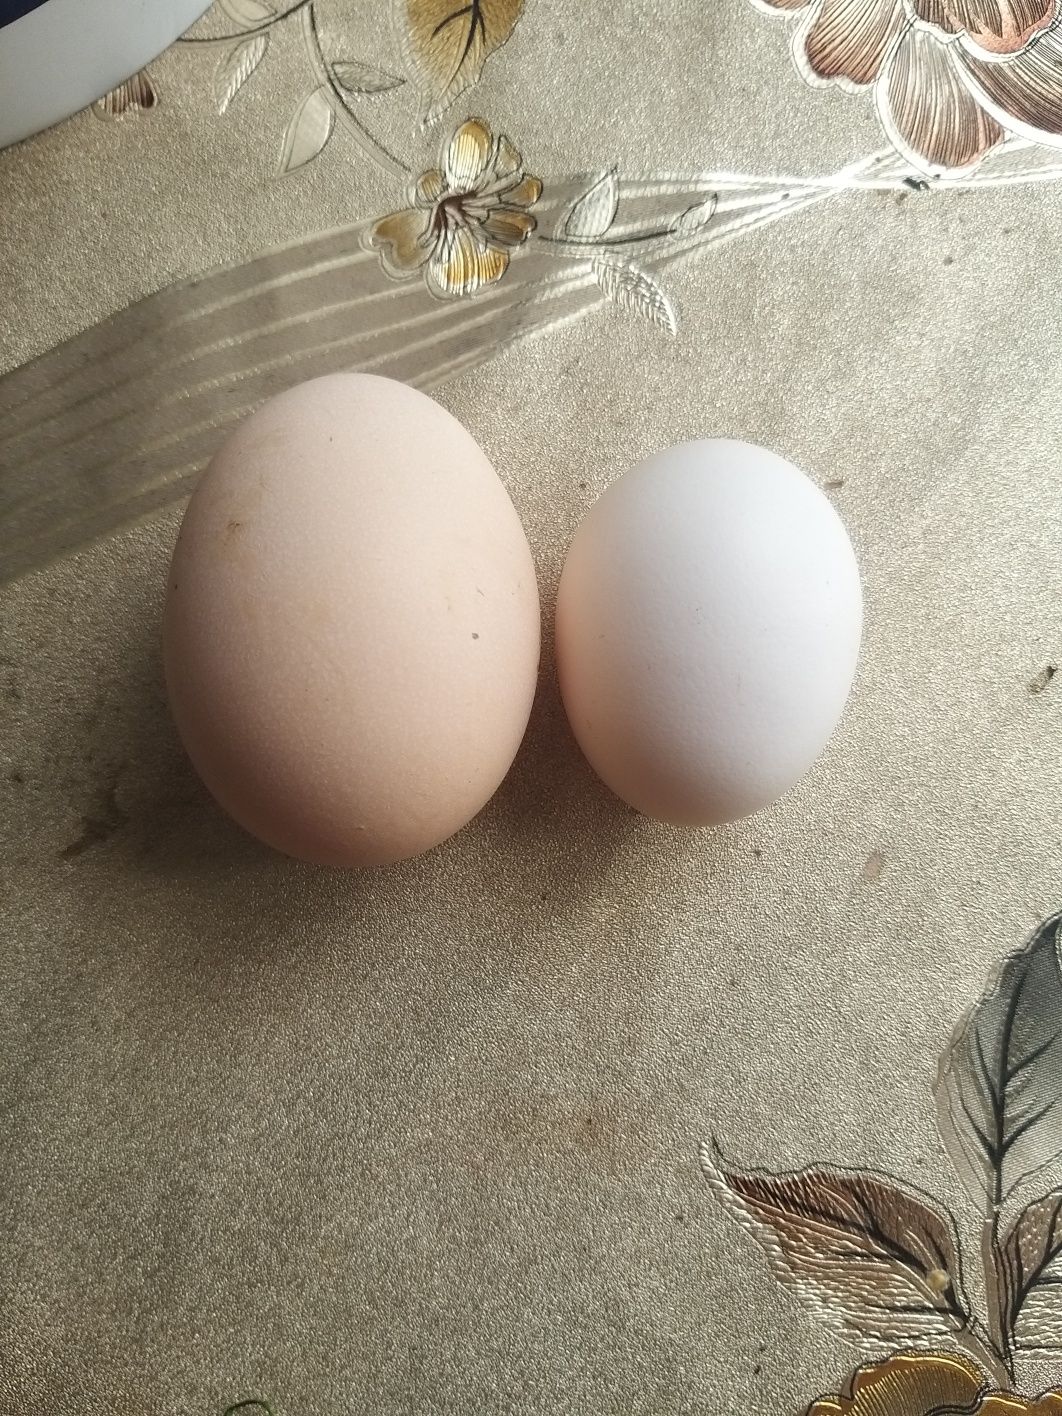 Ouă de găină și ouă de găină americană